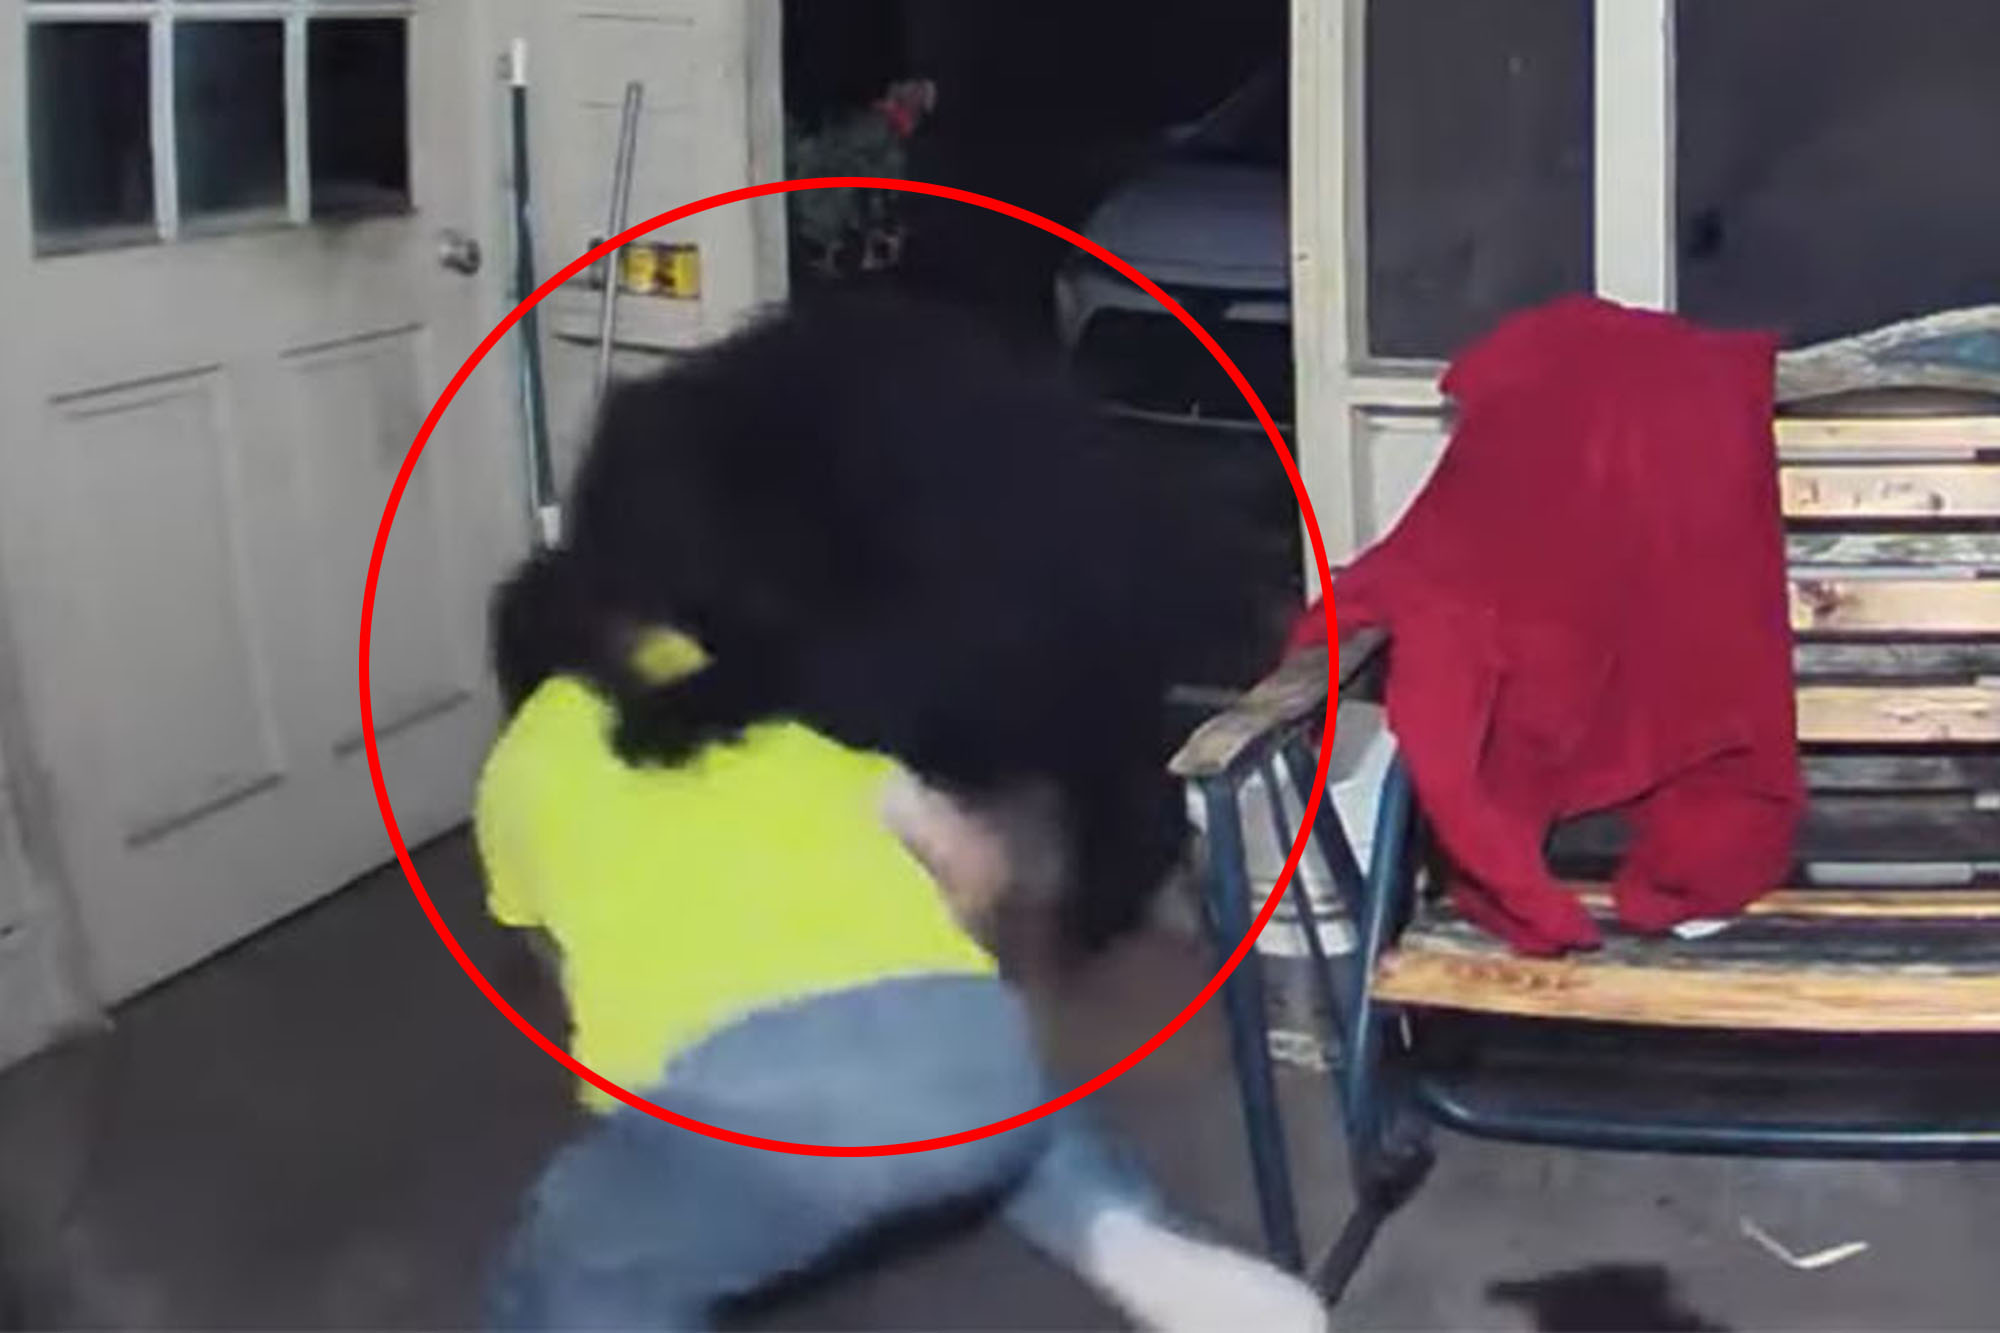 Escalofriante VIDEO muestra a un hombre luchando contra un oso para proteger a sus perros en Florida